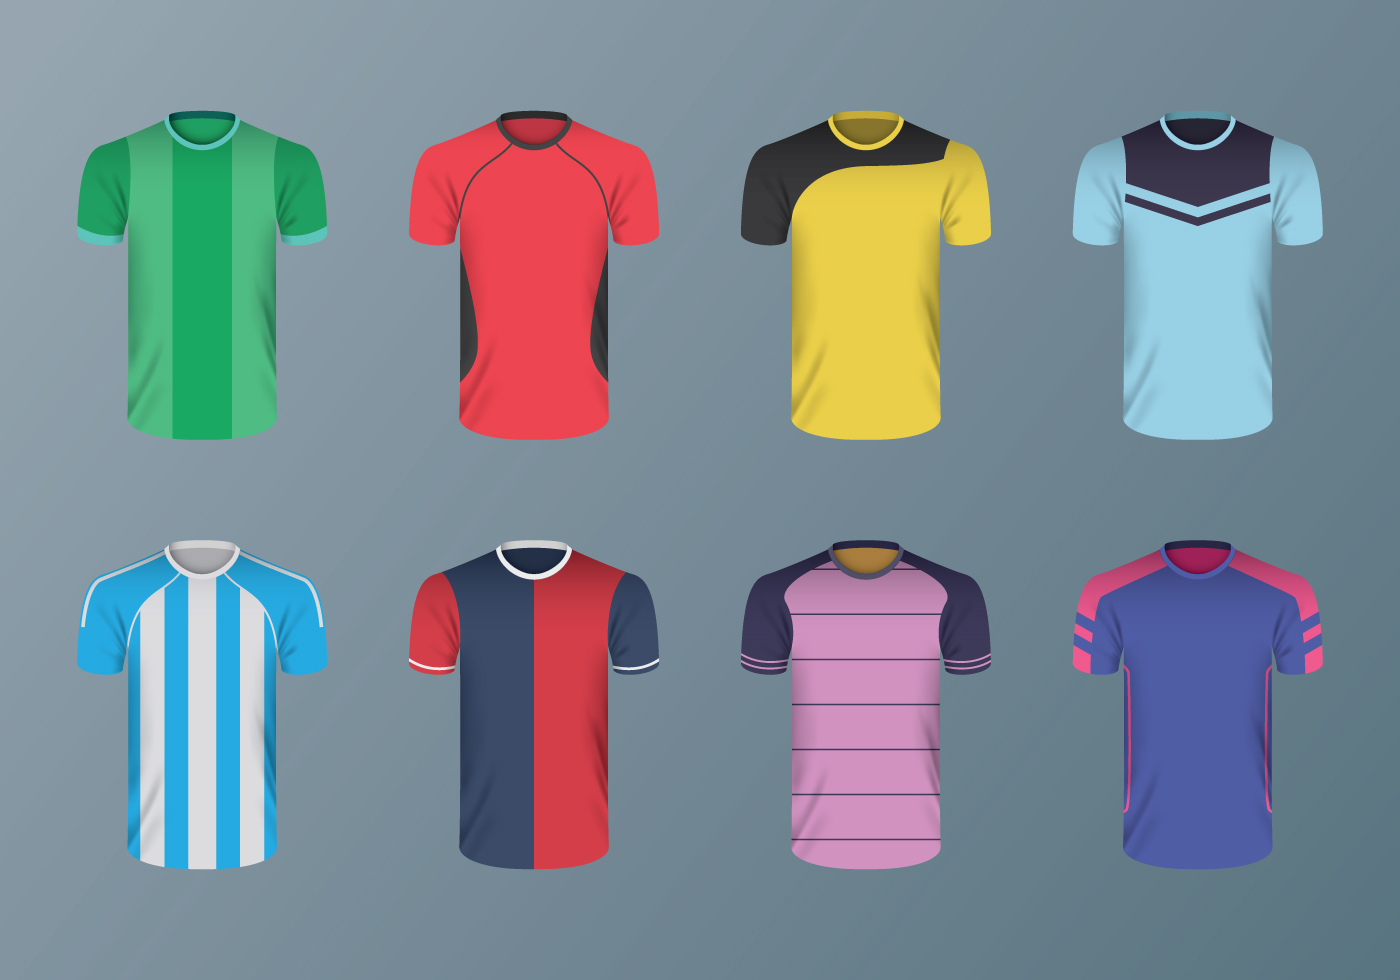 convergencia archivo hacha Camiseta De Futbol Vectores, Iconos, Gráficos y Fondos para Descargar Gratis